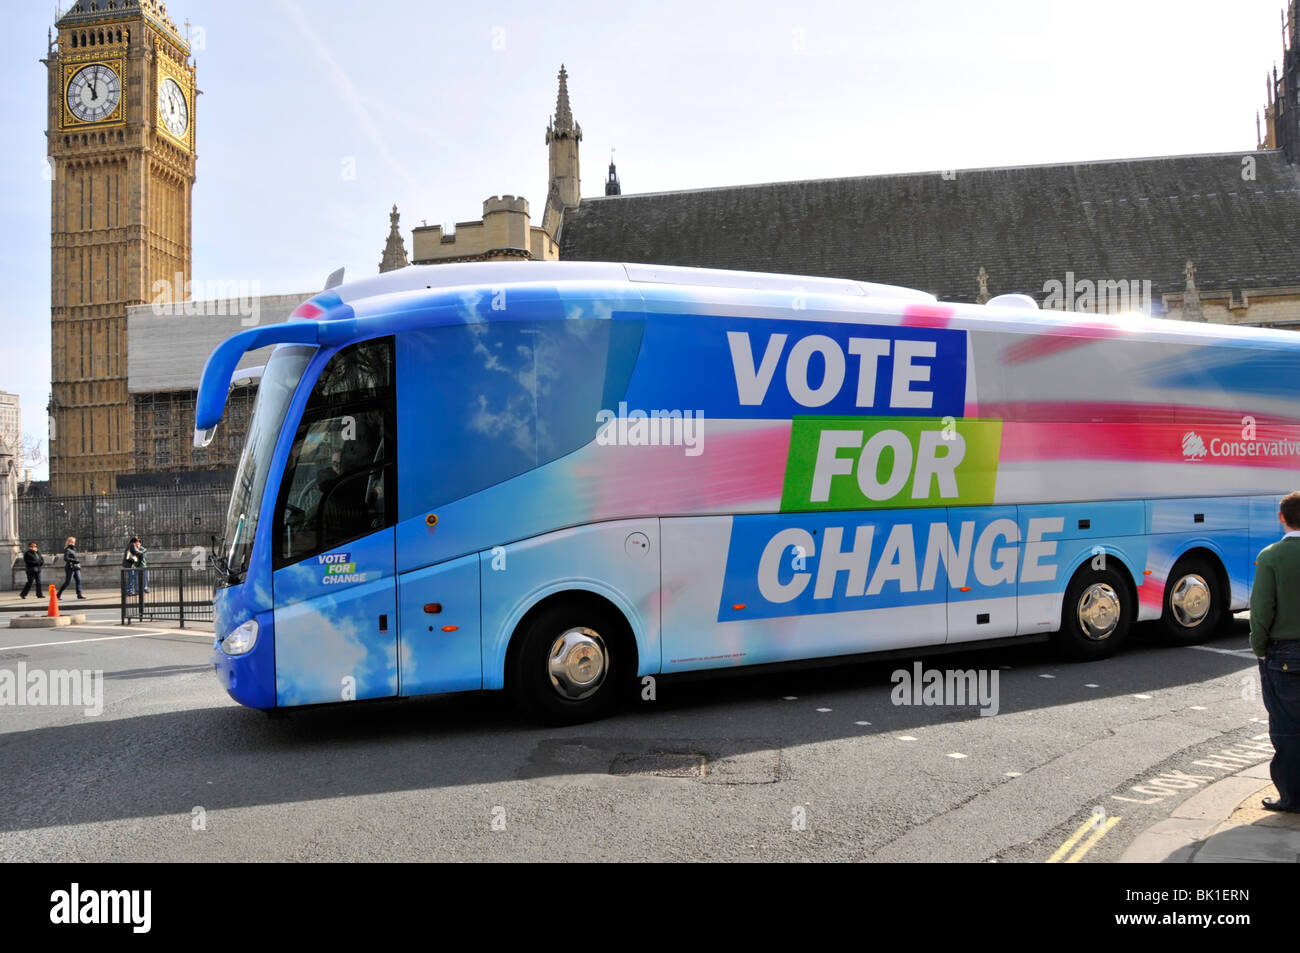 Parti politique conservateur 2010 autobus de campagne électorale sur la place du Parlement devant les chambres du Parlement Westminster Londres Angleterre Royaume-Uni Banque D'Images